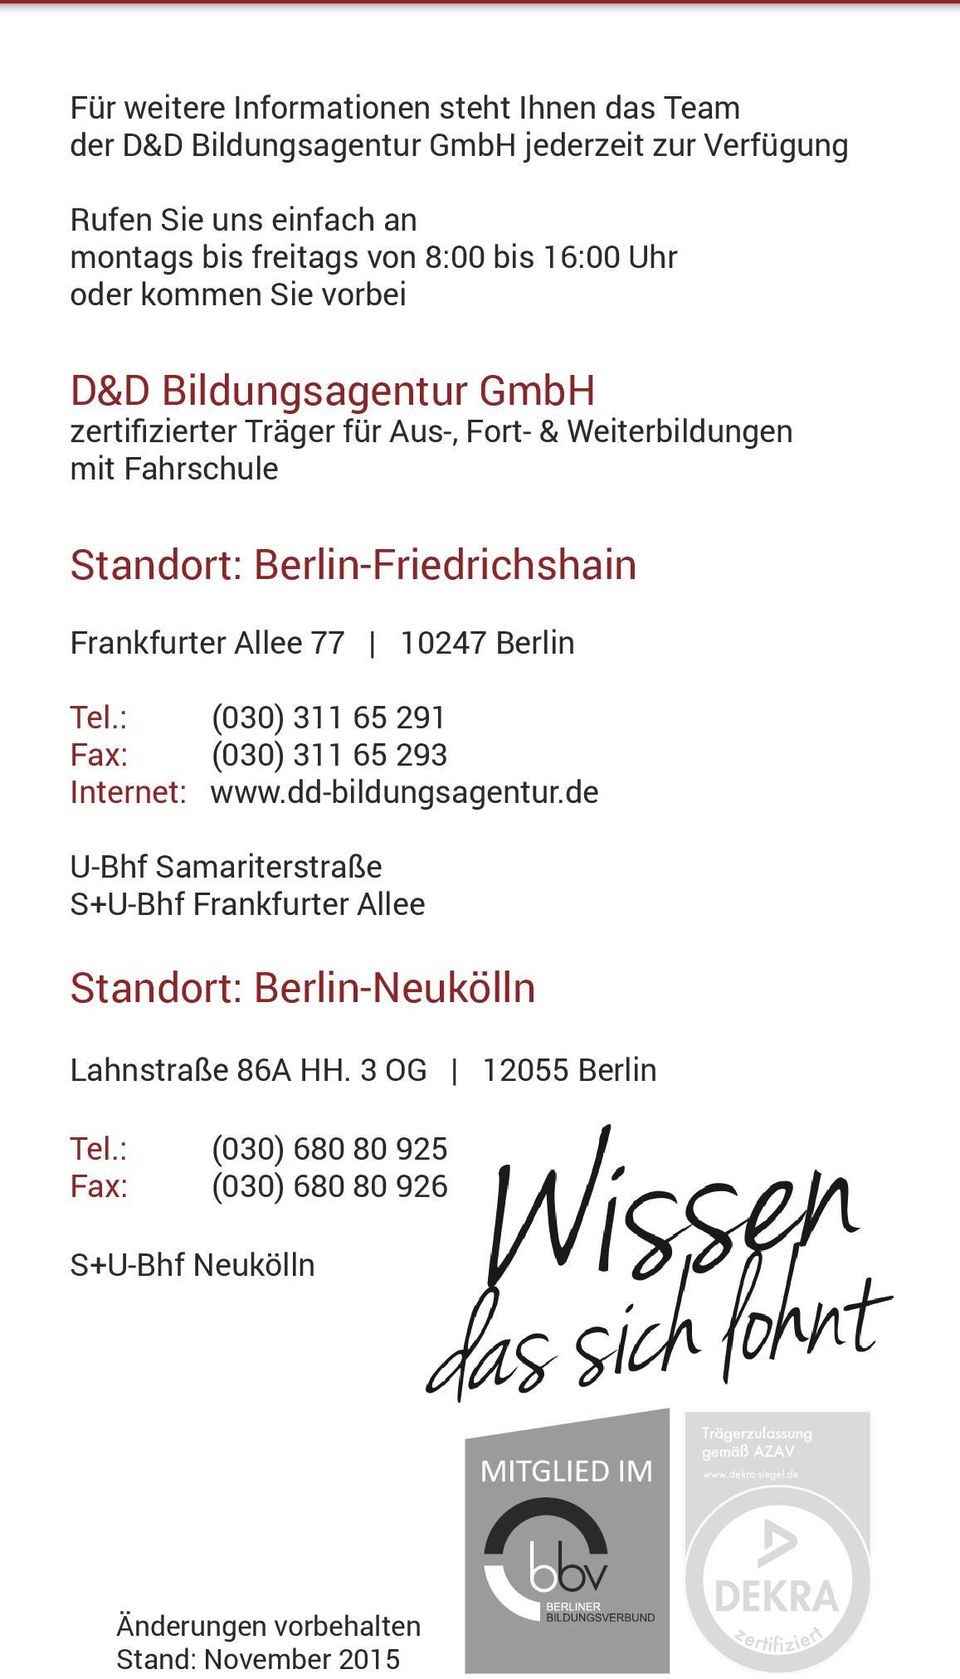 Frankfurter Allee 77 10247 Berlin Tel.: (030) 311 65 291 Fax: (030) 311 65 293 Internet: www.dd-bildungsagentur.